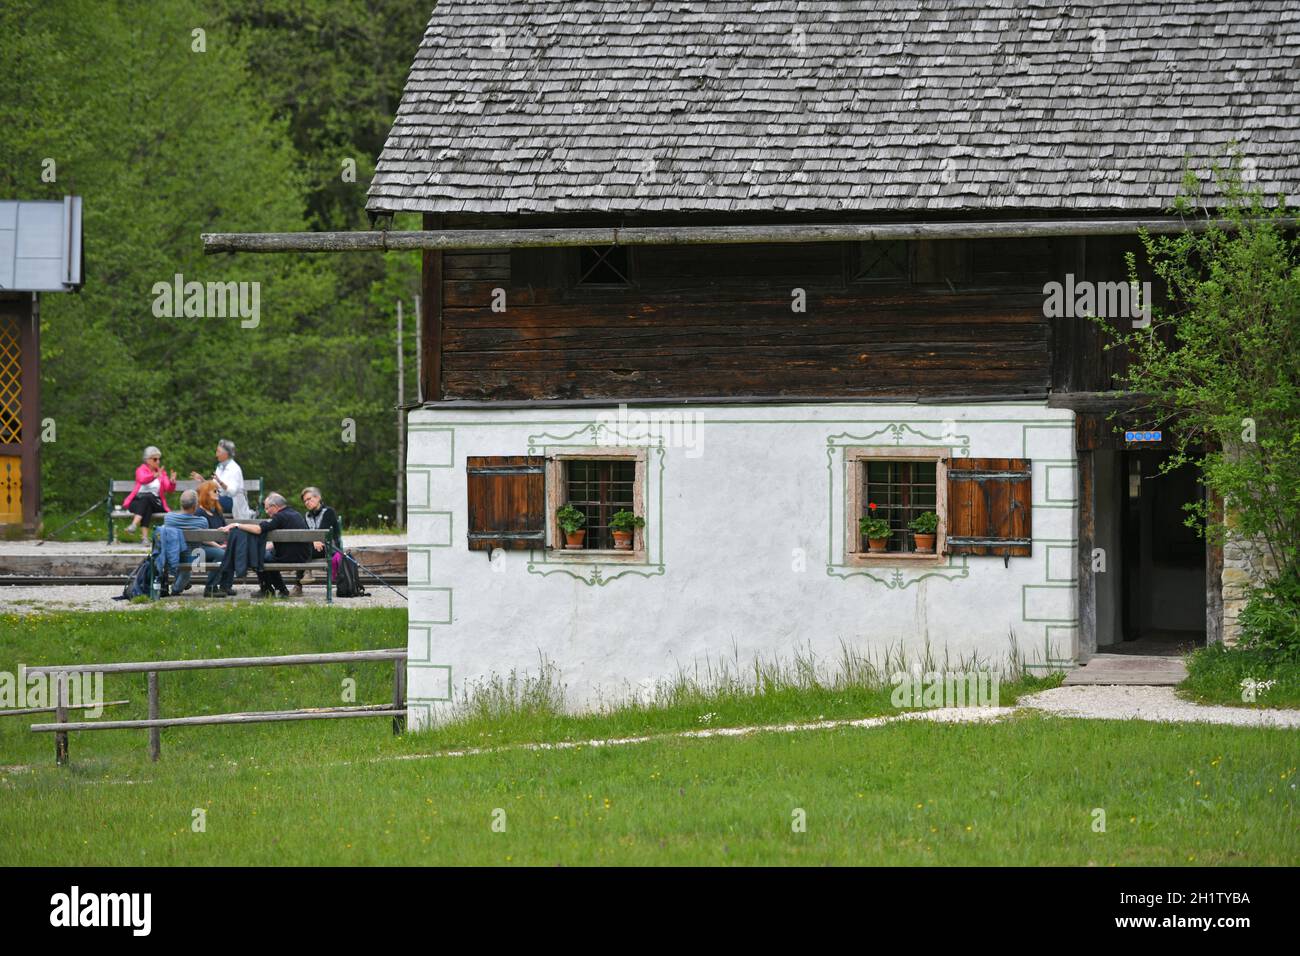 Freilichtmuseum mit alten Bauernhäusern und Gebäuden in Großgmain in Salzburg, Österreich, Europa - Open-air museum with old farmhouses and buildings Stock Photo